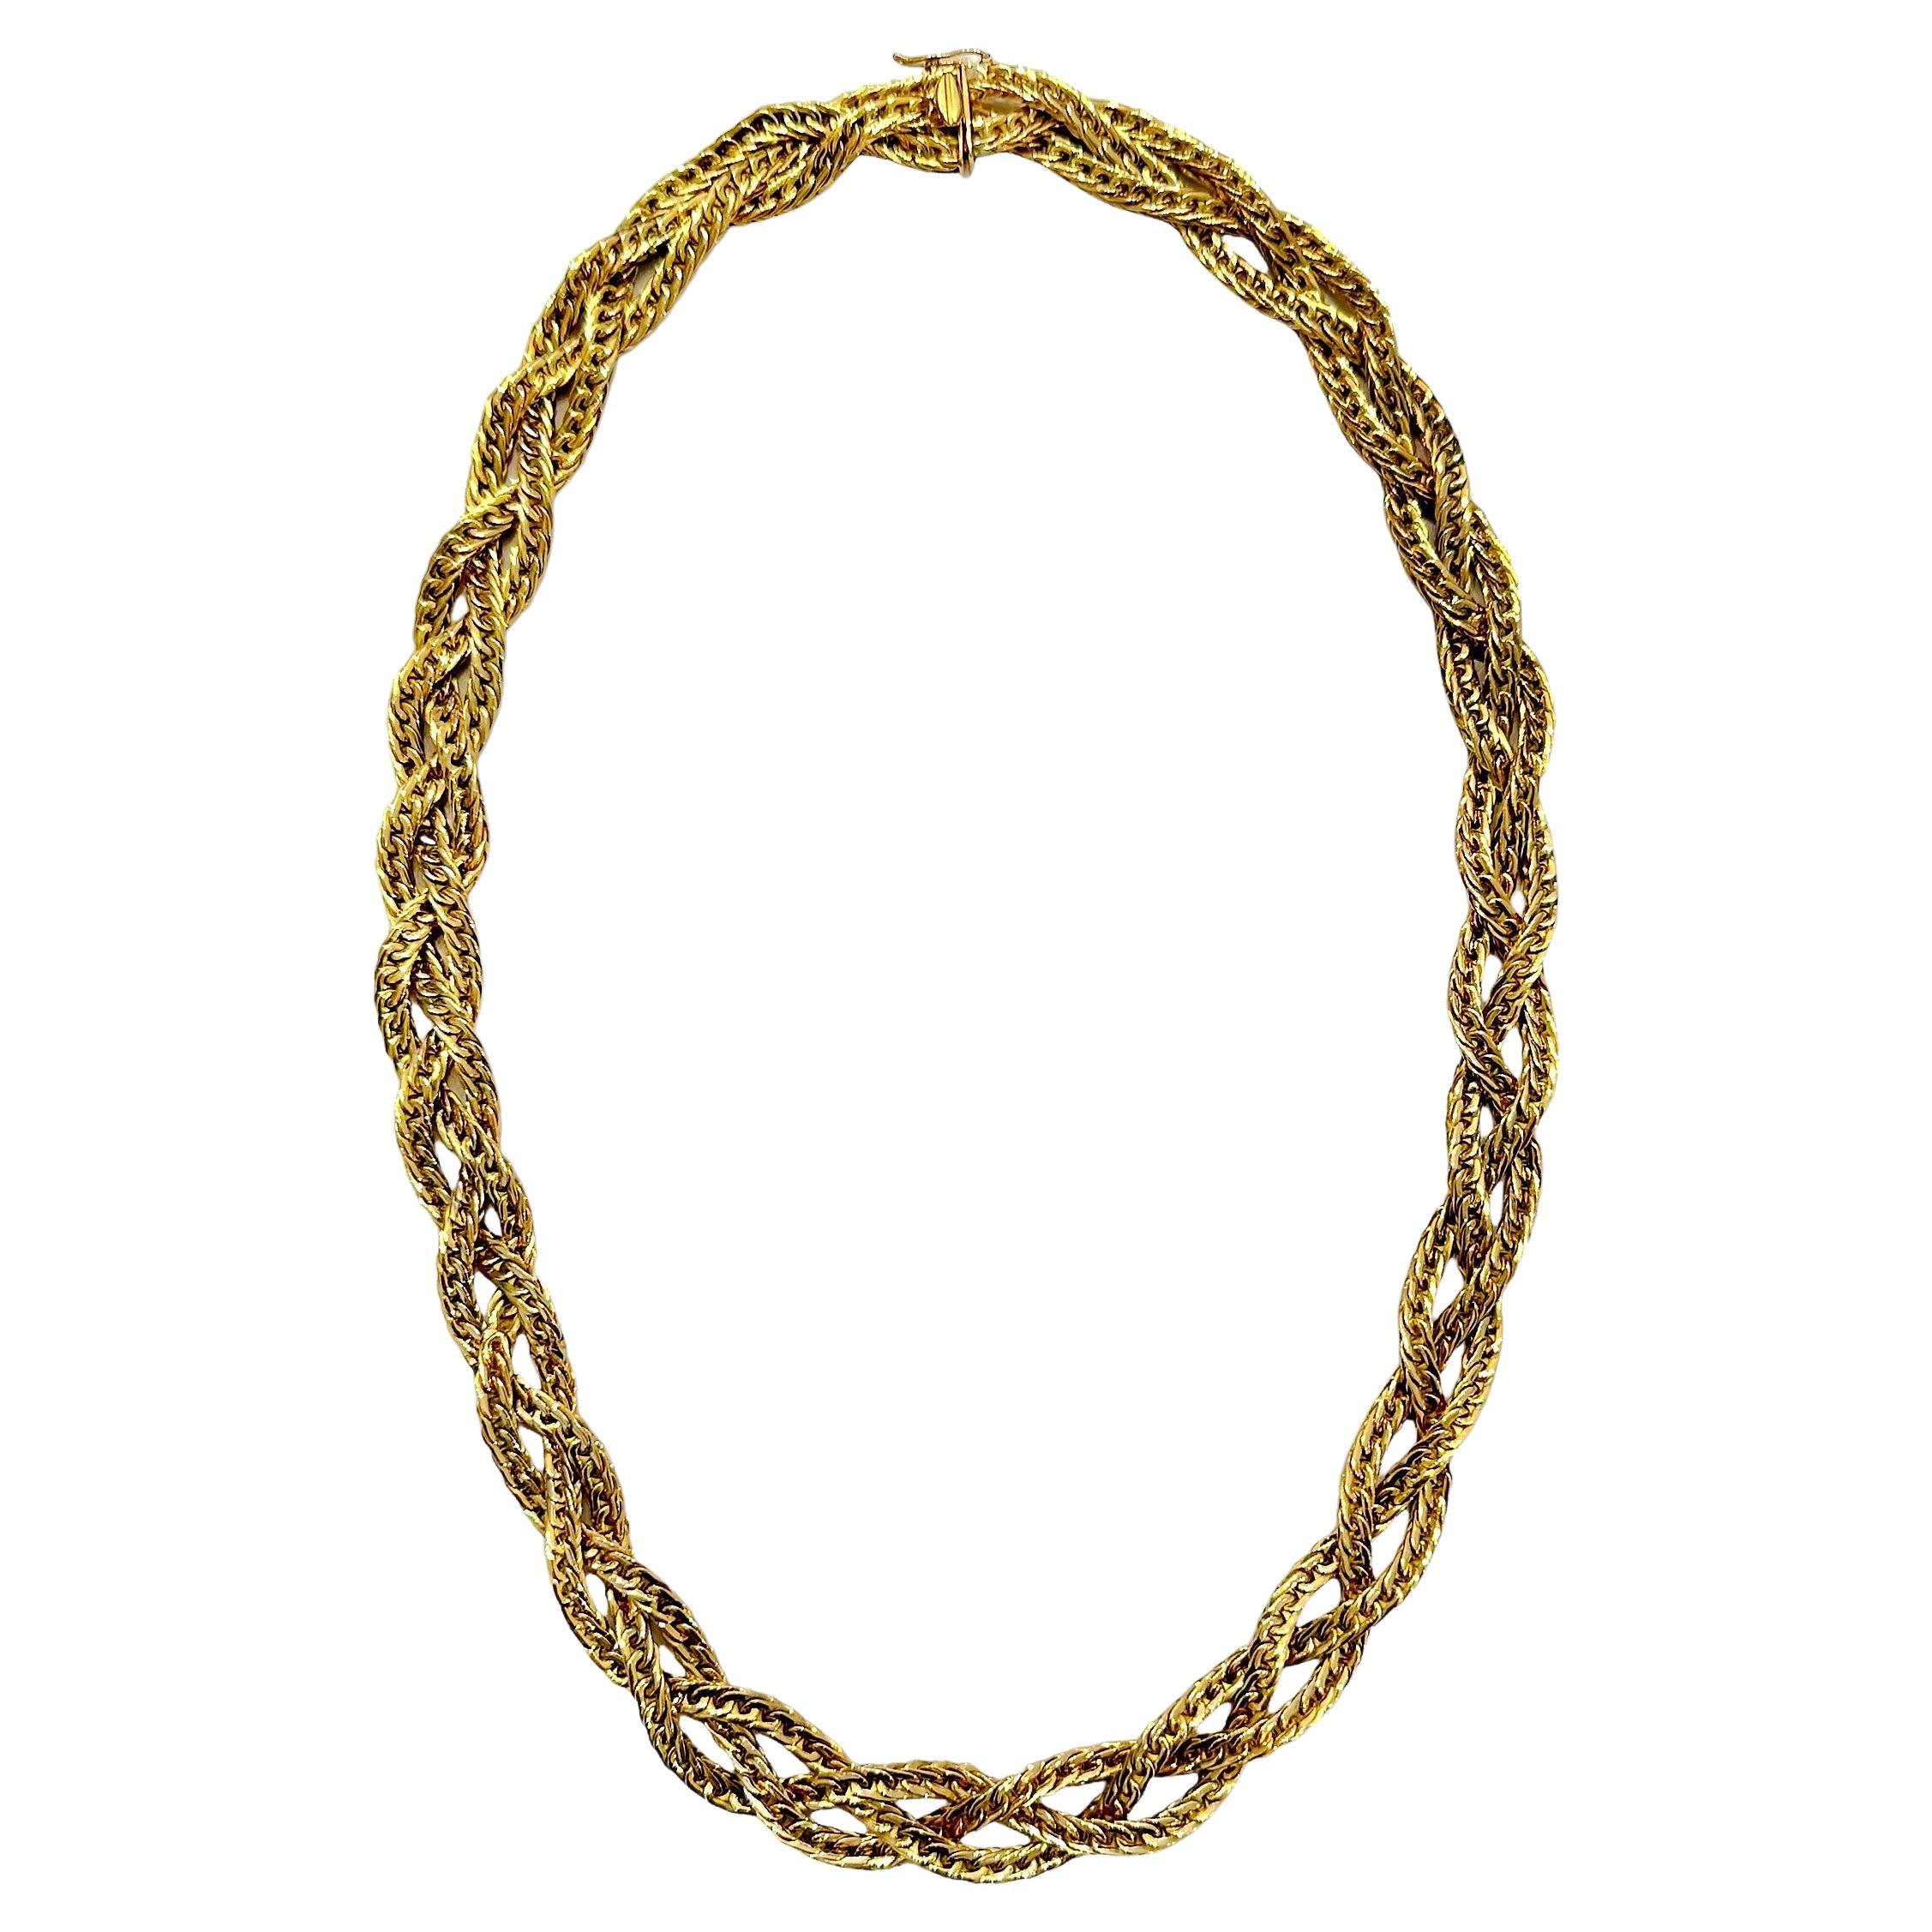 Élégant collier italien tressé en or 18 carats à 3 brins, 22 pouces par 1/2 pouce de large